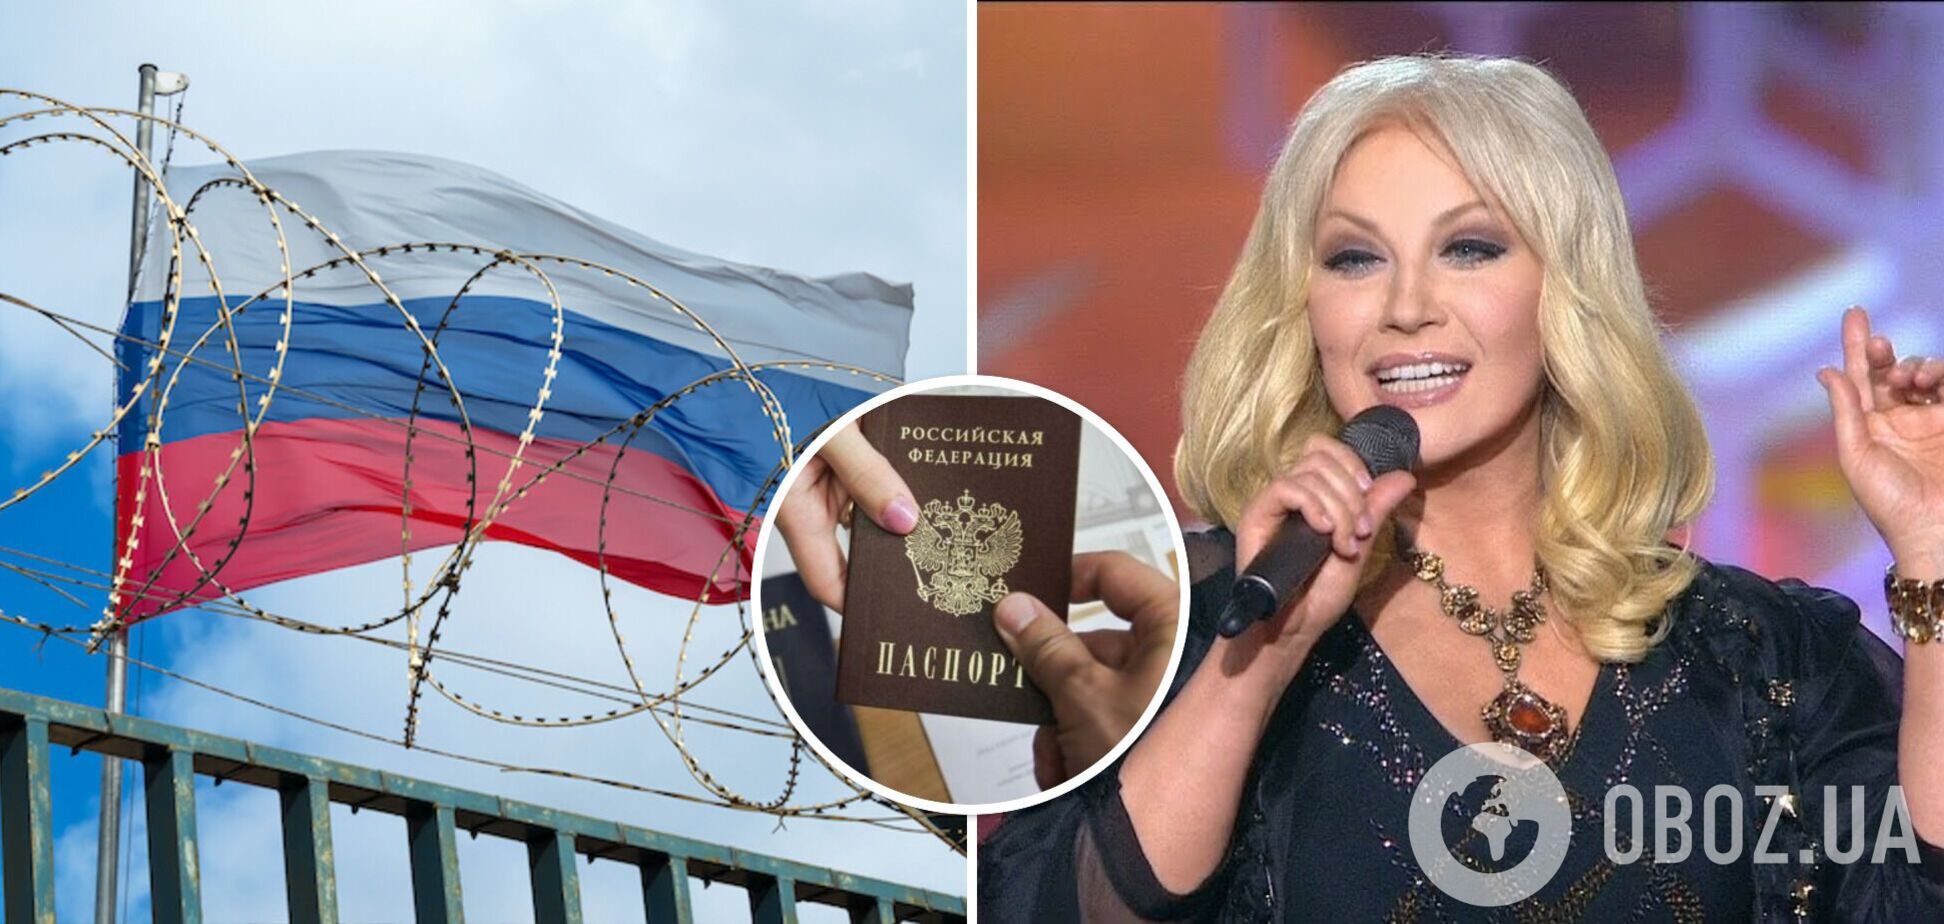 Зрадниця Повалій з новим паспортом розхвалила пропагандистам своє життя в Росії